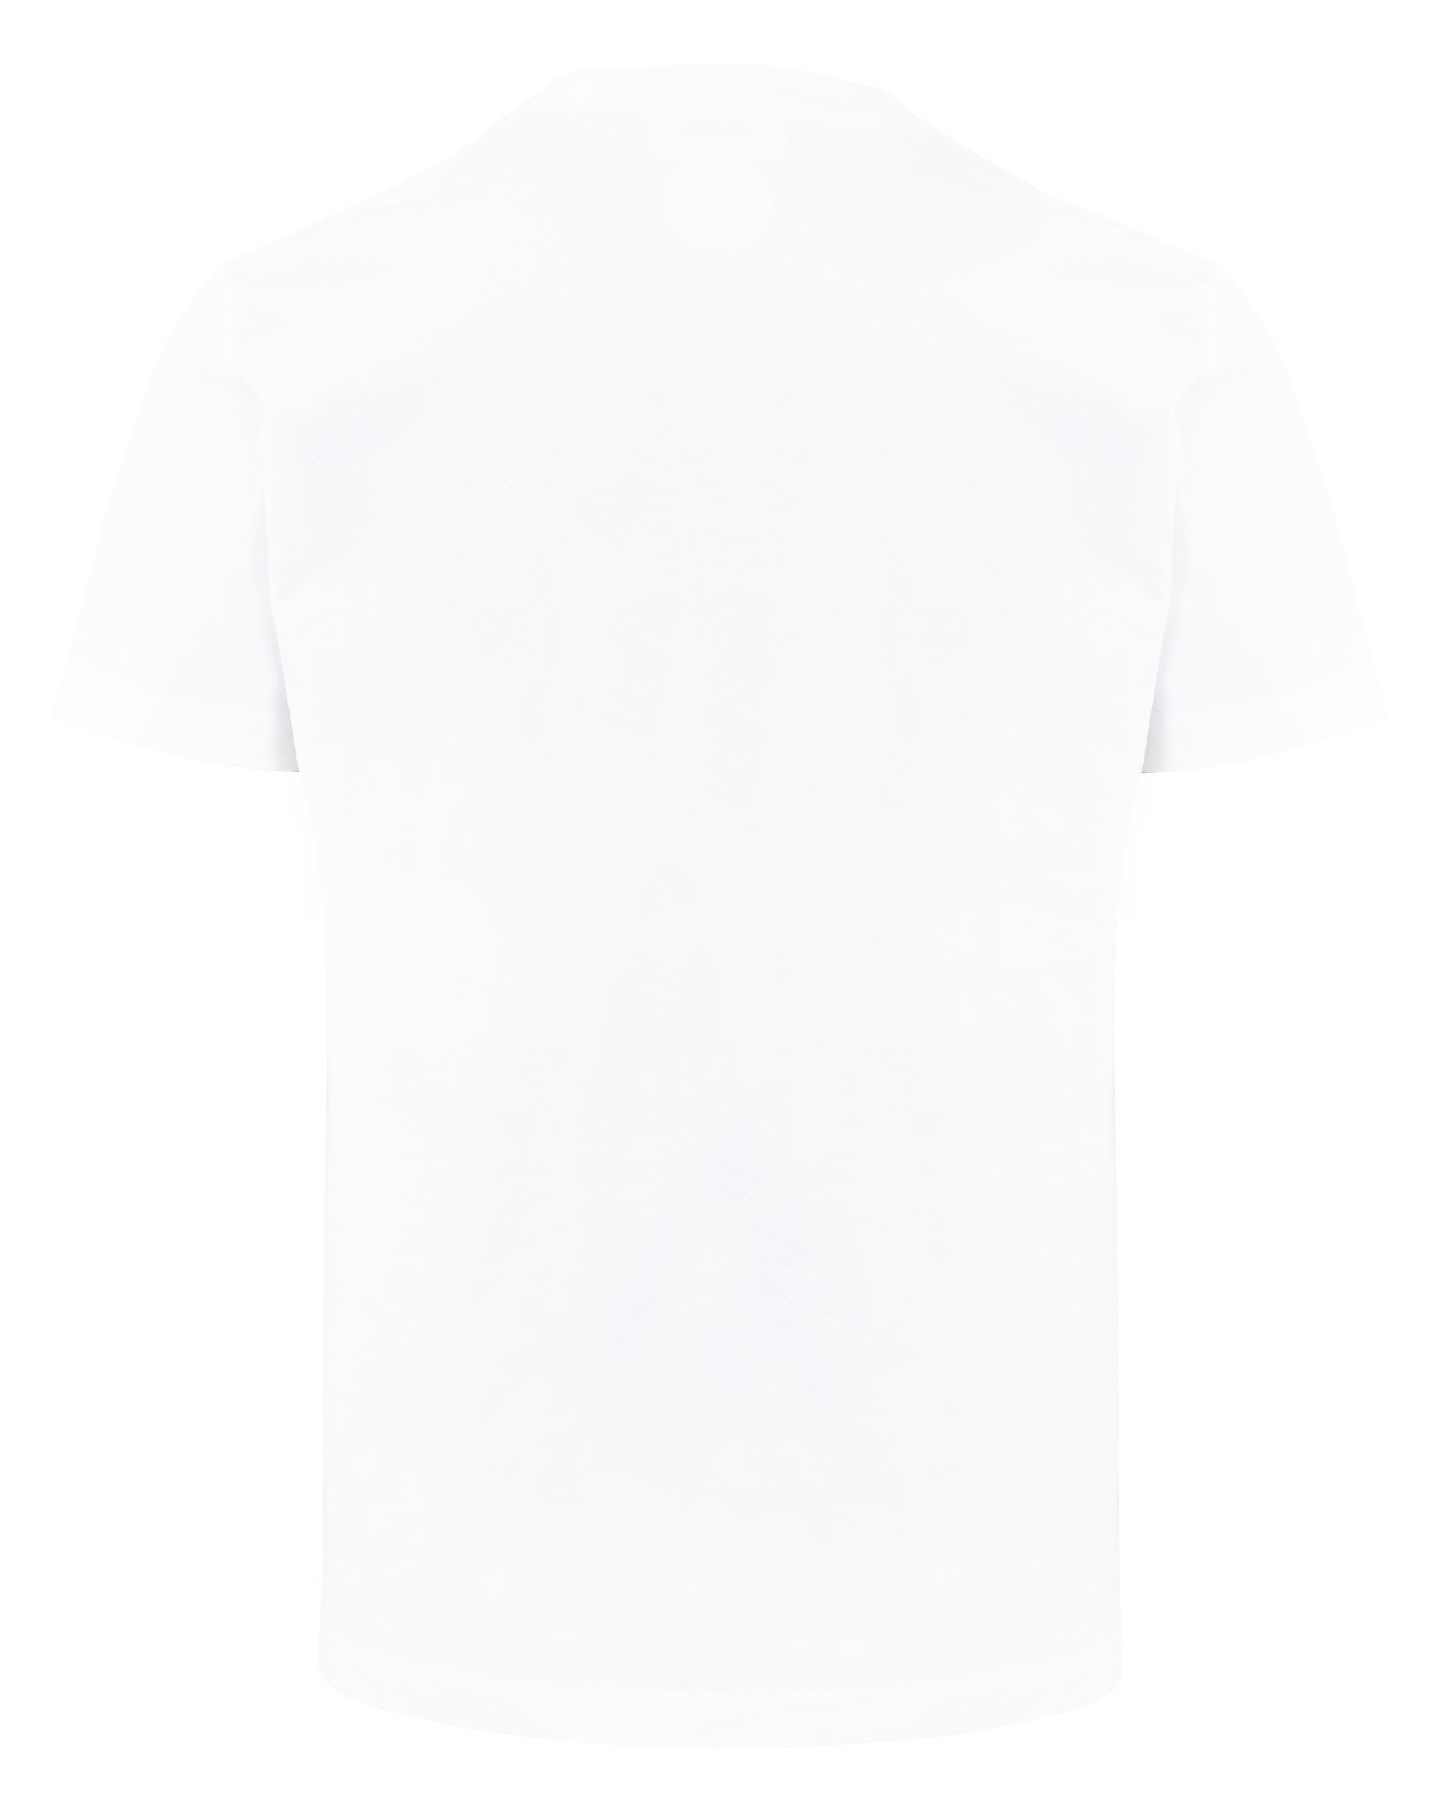 Men T-shirt